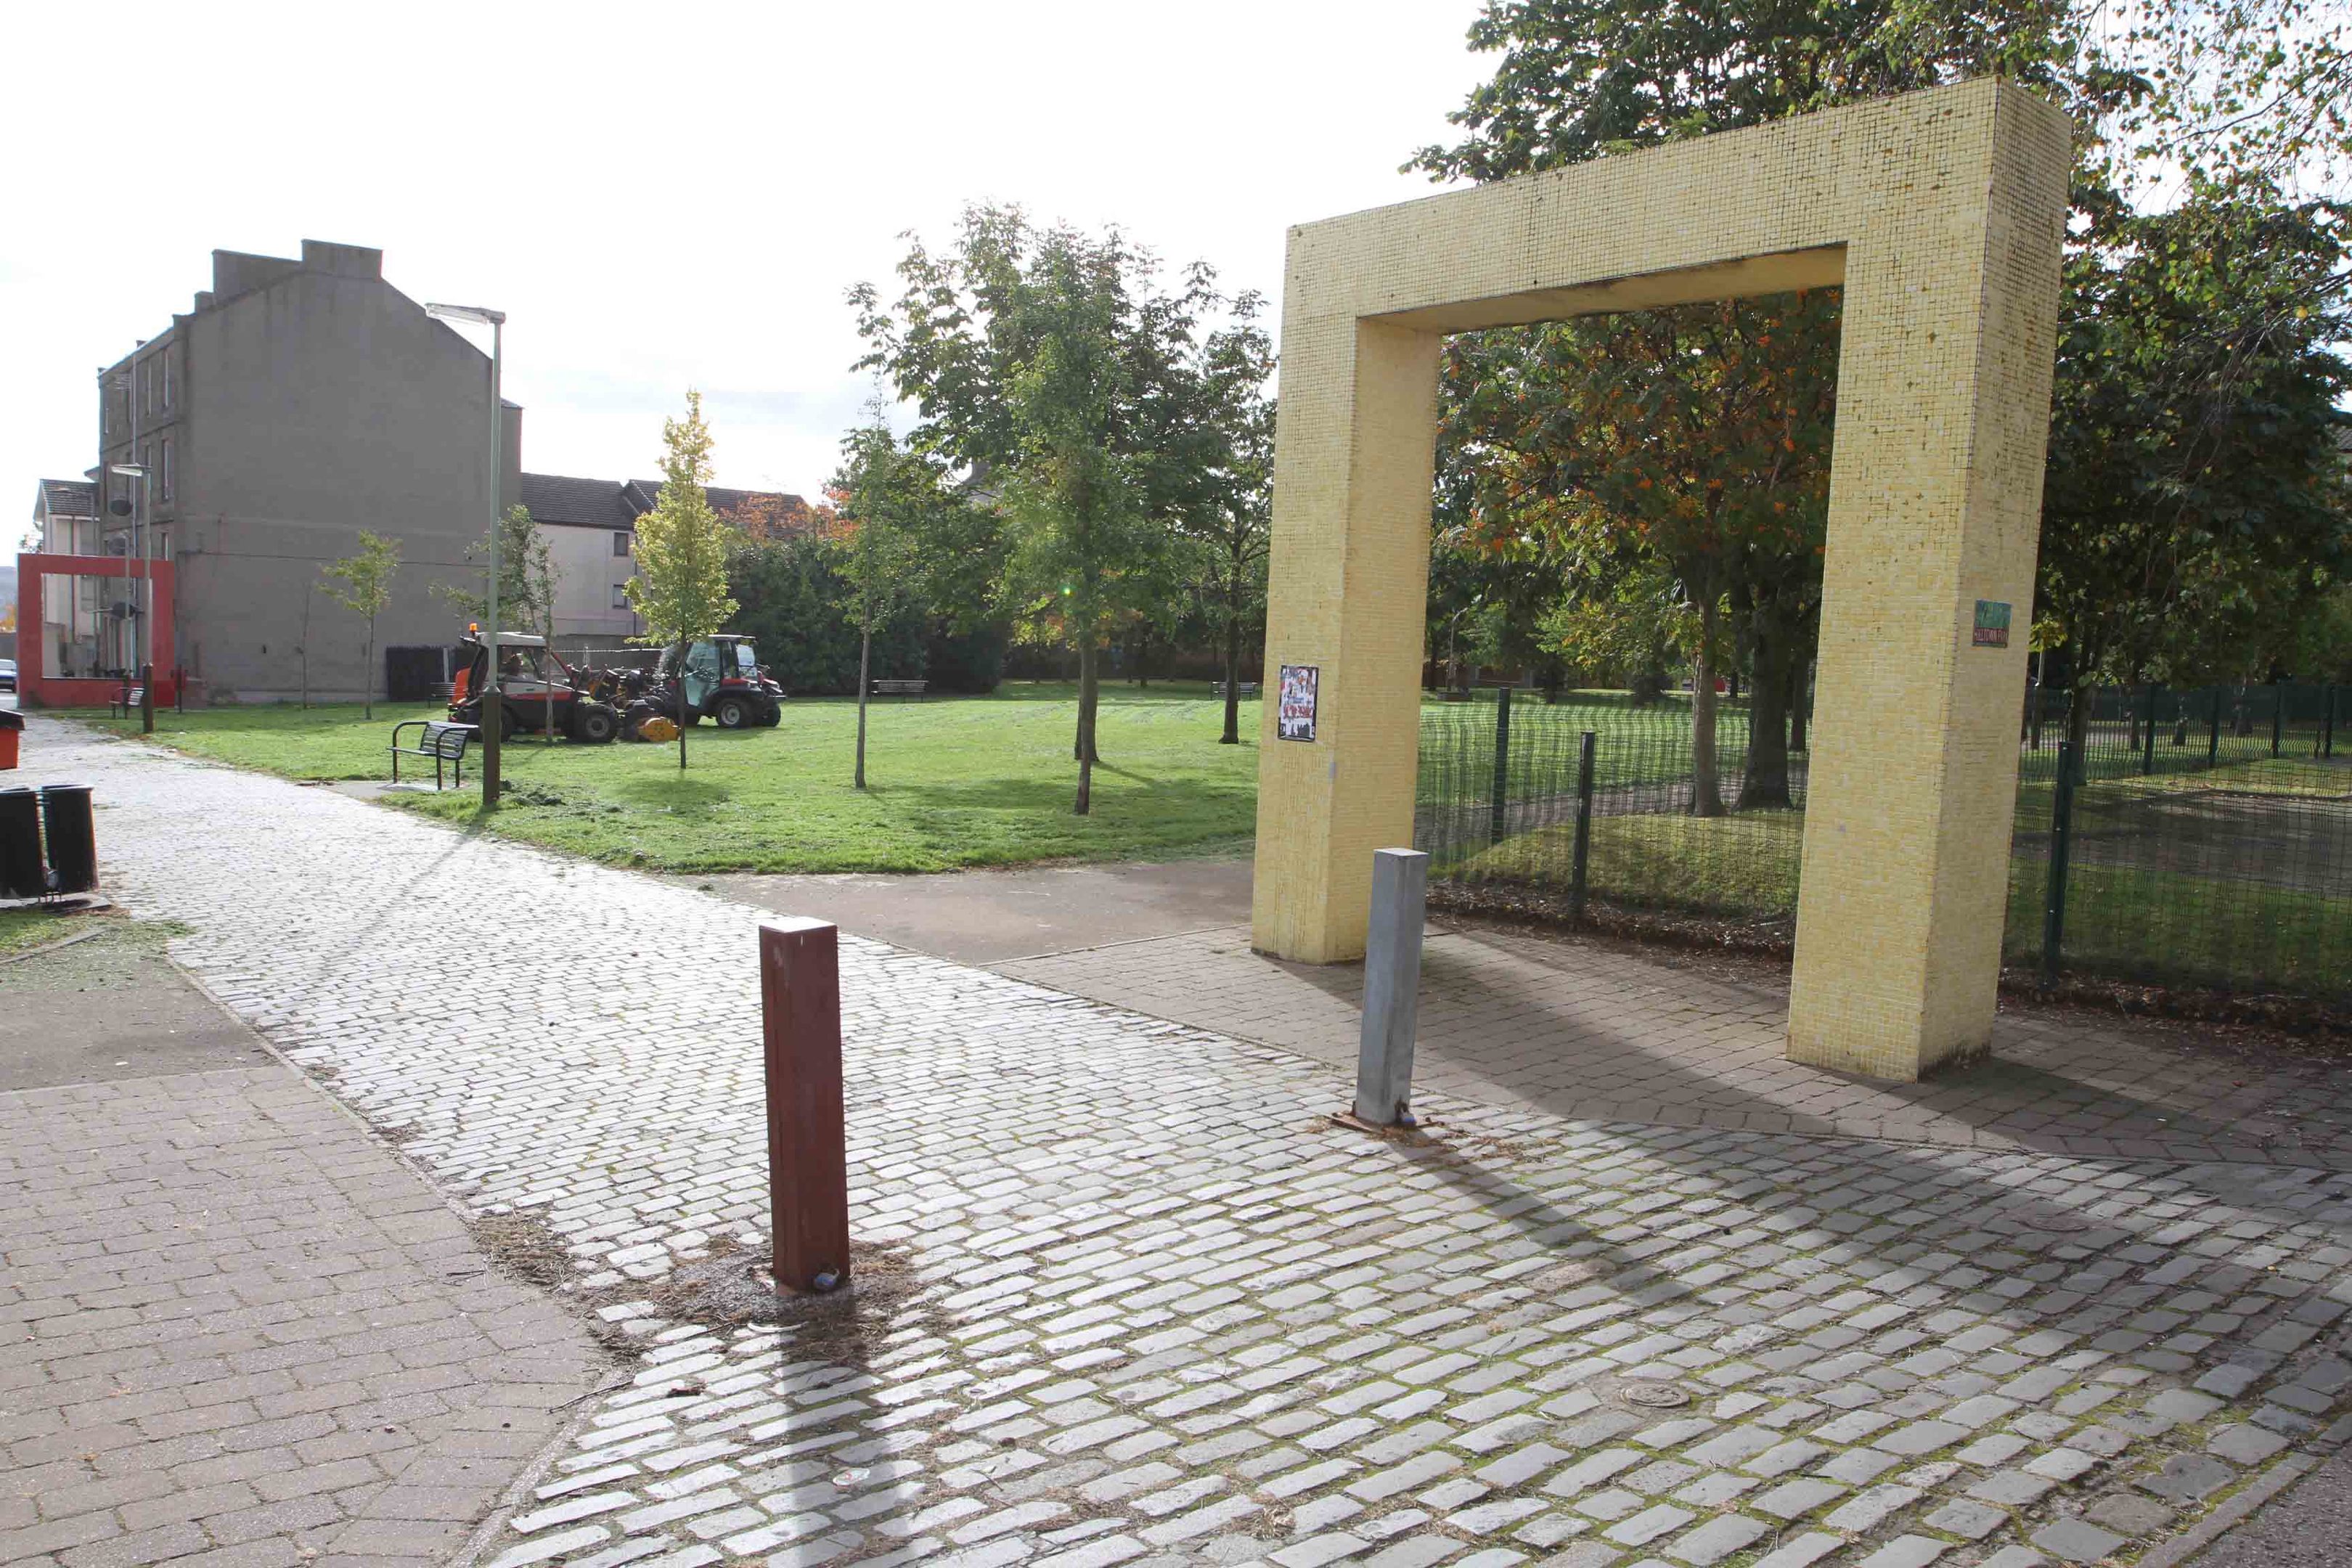 Hilltown Park, where the assault took place